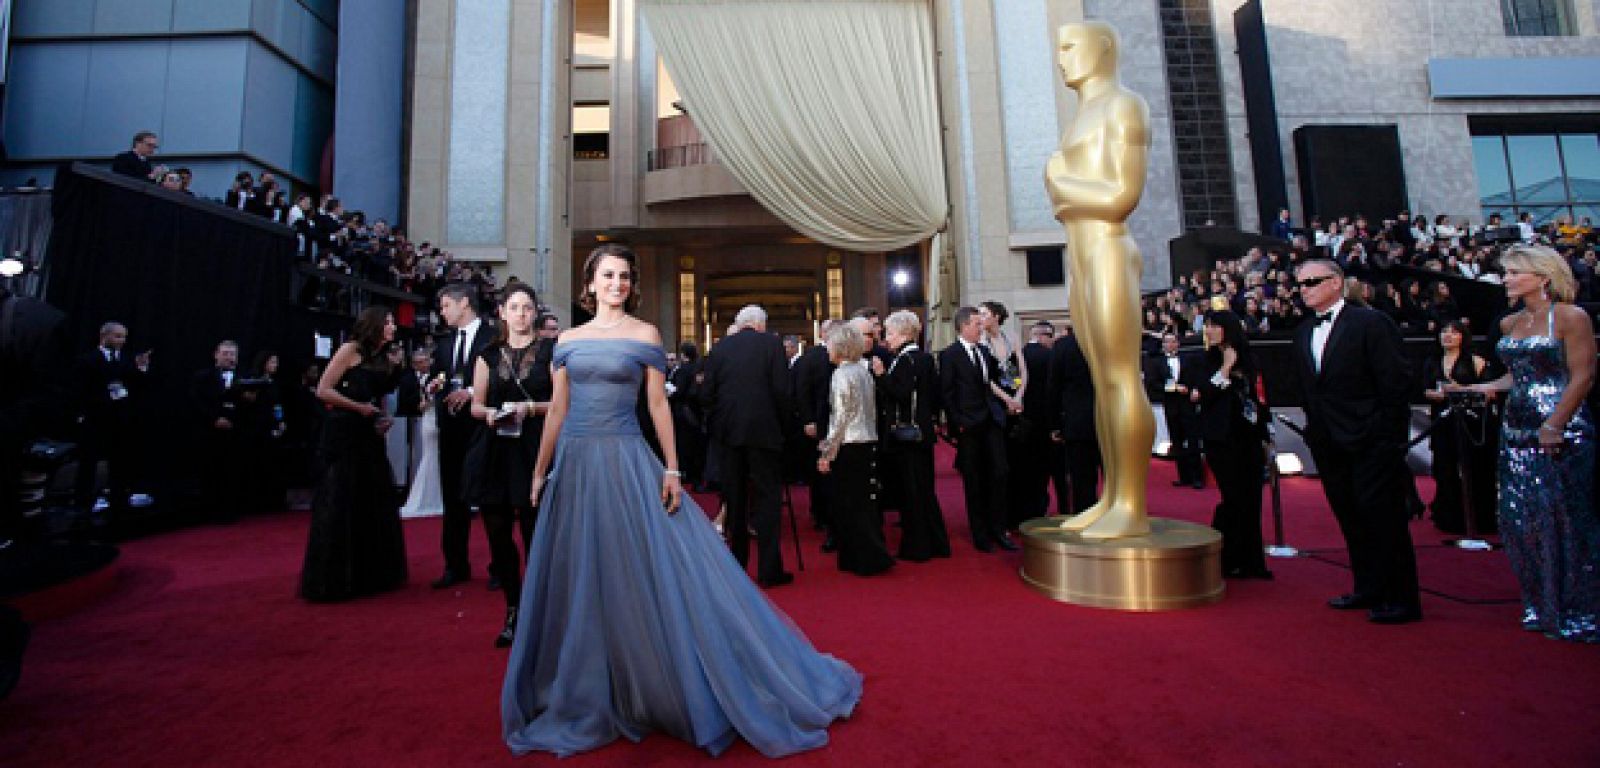 Penélope Cruz conun vestido de Armani a su llegada a la alfrombra roja de los Oscar.